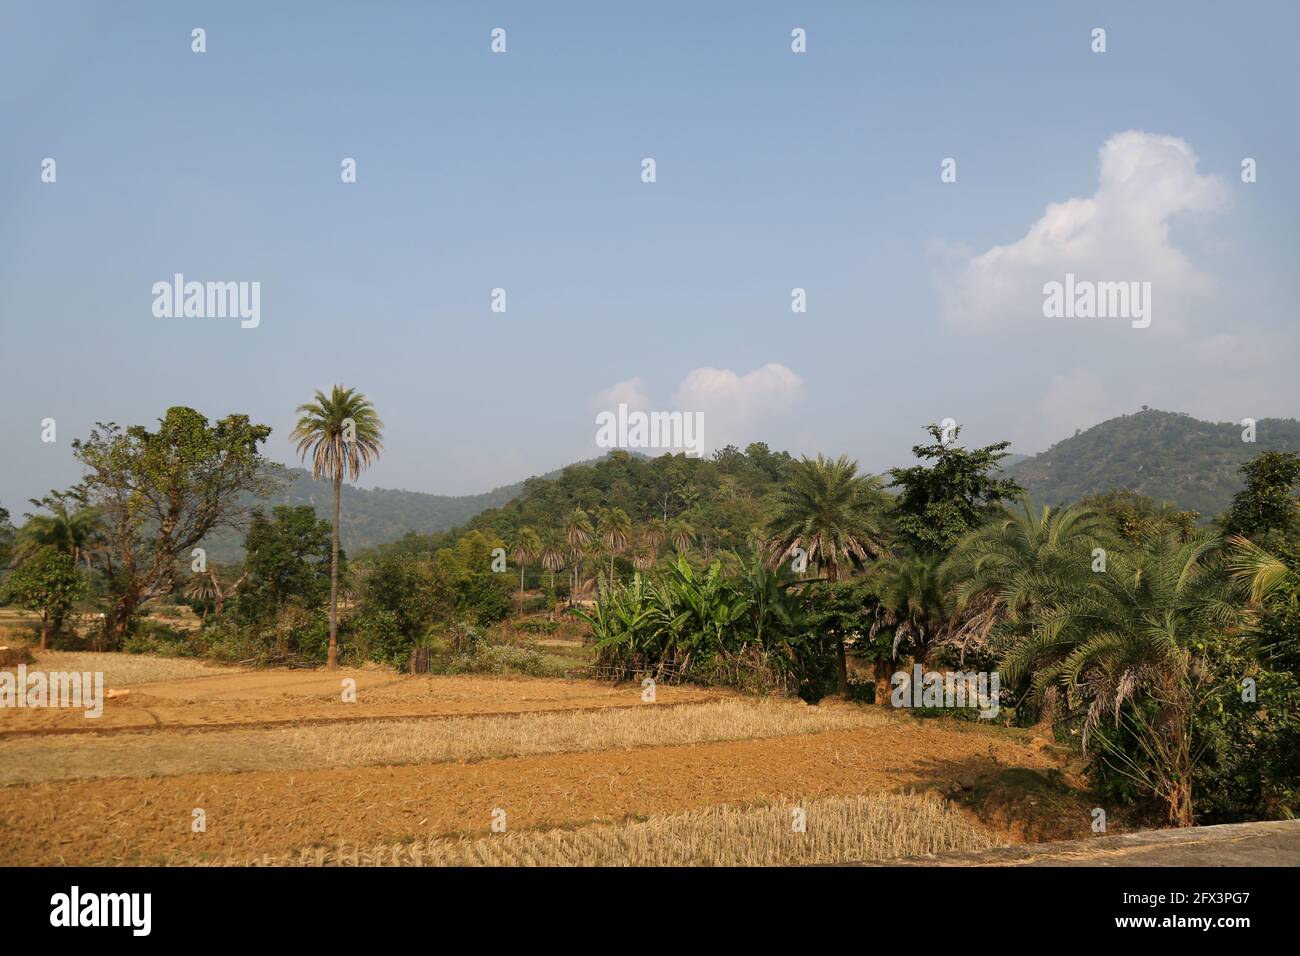 LANJIA SAORA TRIBE - Typische Ansicht der Paddy Fields des Lanjia Saora Stammes. Sie betreiben eine wechselnde Kultivierung. Gunpur Stammesdorf von Odisha, Indien Stockfoto